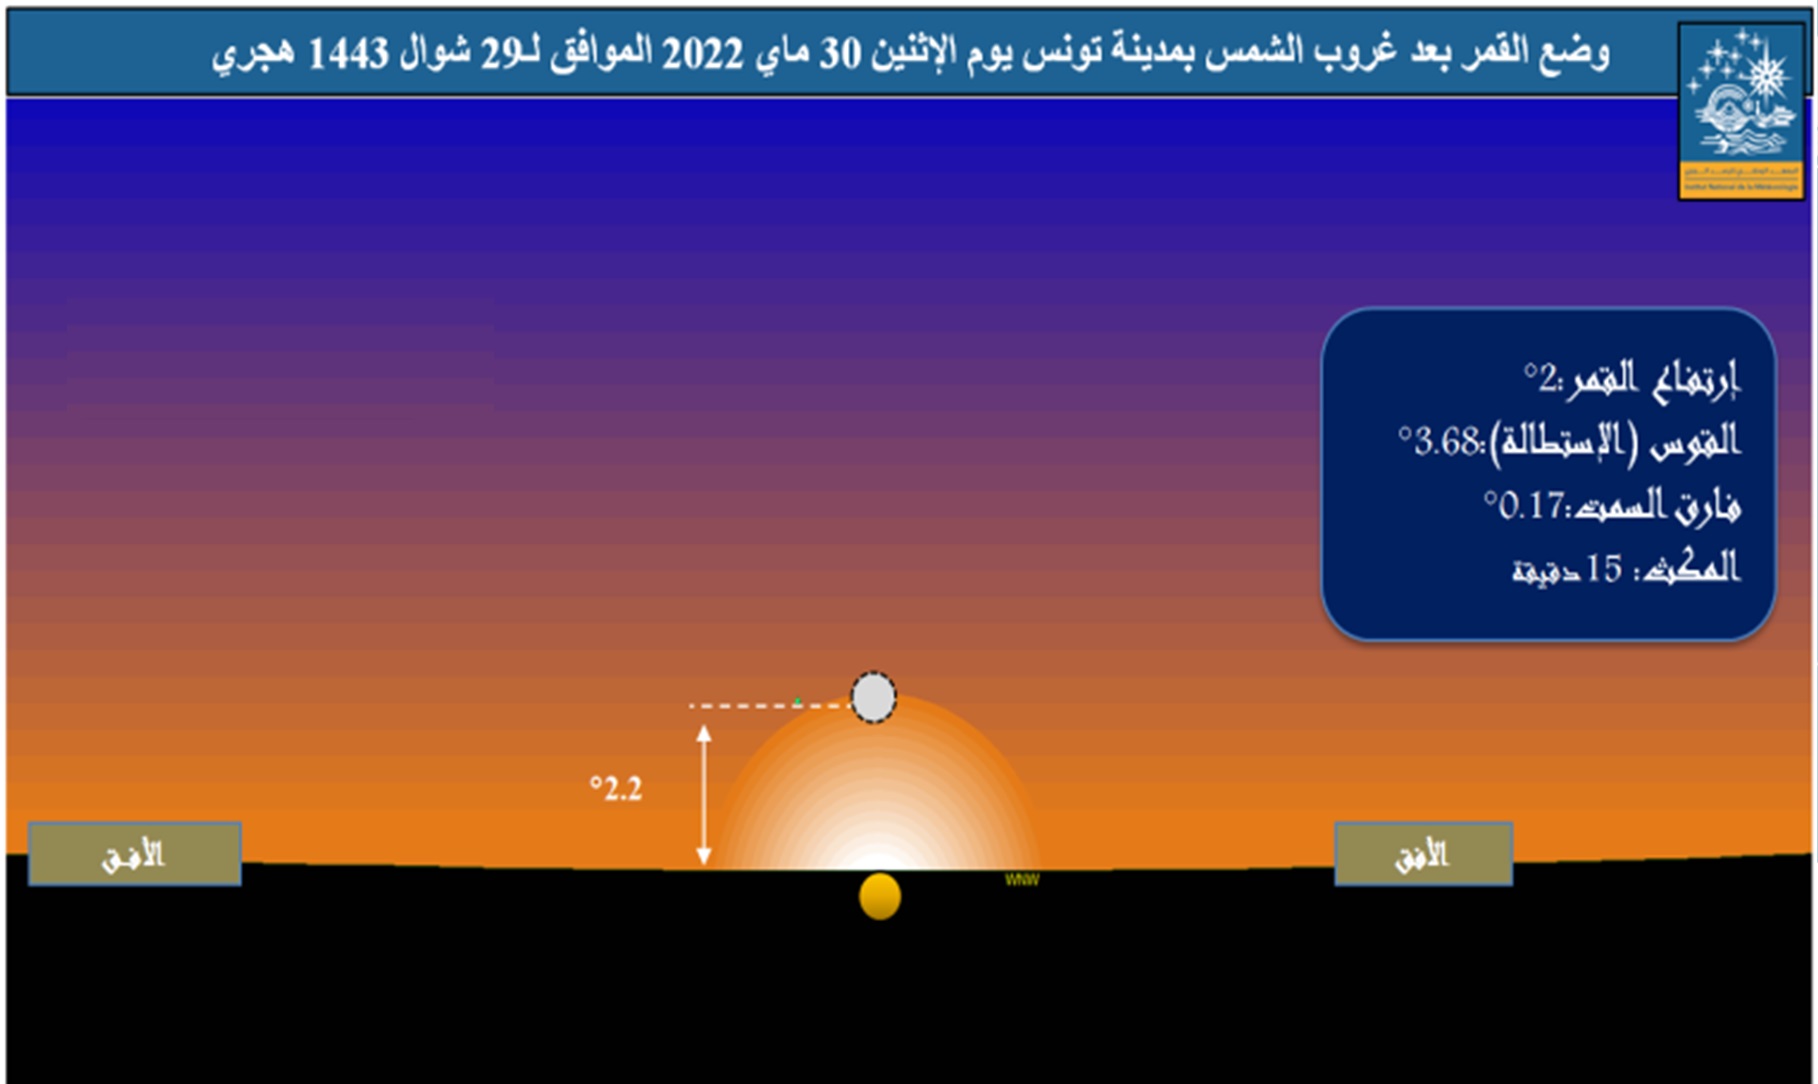 وضع القمر في الأفق الغربي بمدينة تونس، بعد غروب الشمس يوم الإثنين 30 ماي 2022 و تظهر الصورة المعطيات الفلكية من قوس (استطالة) و ارتفاع و فارق سمت بين الشمس والقمر.